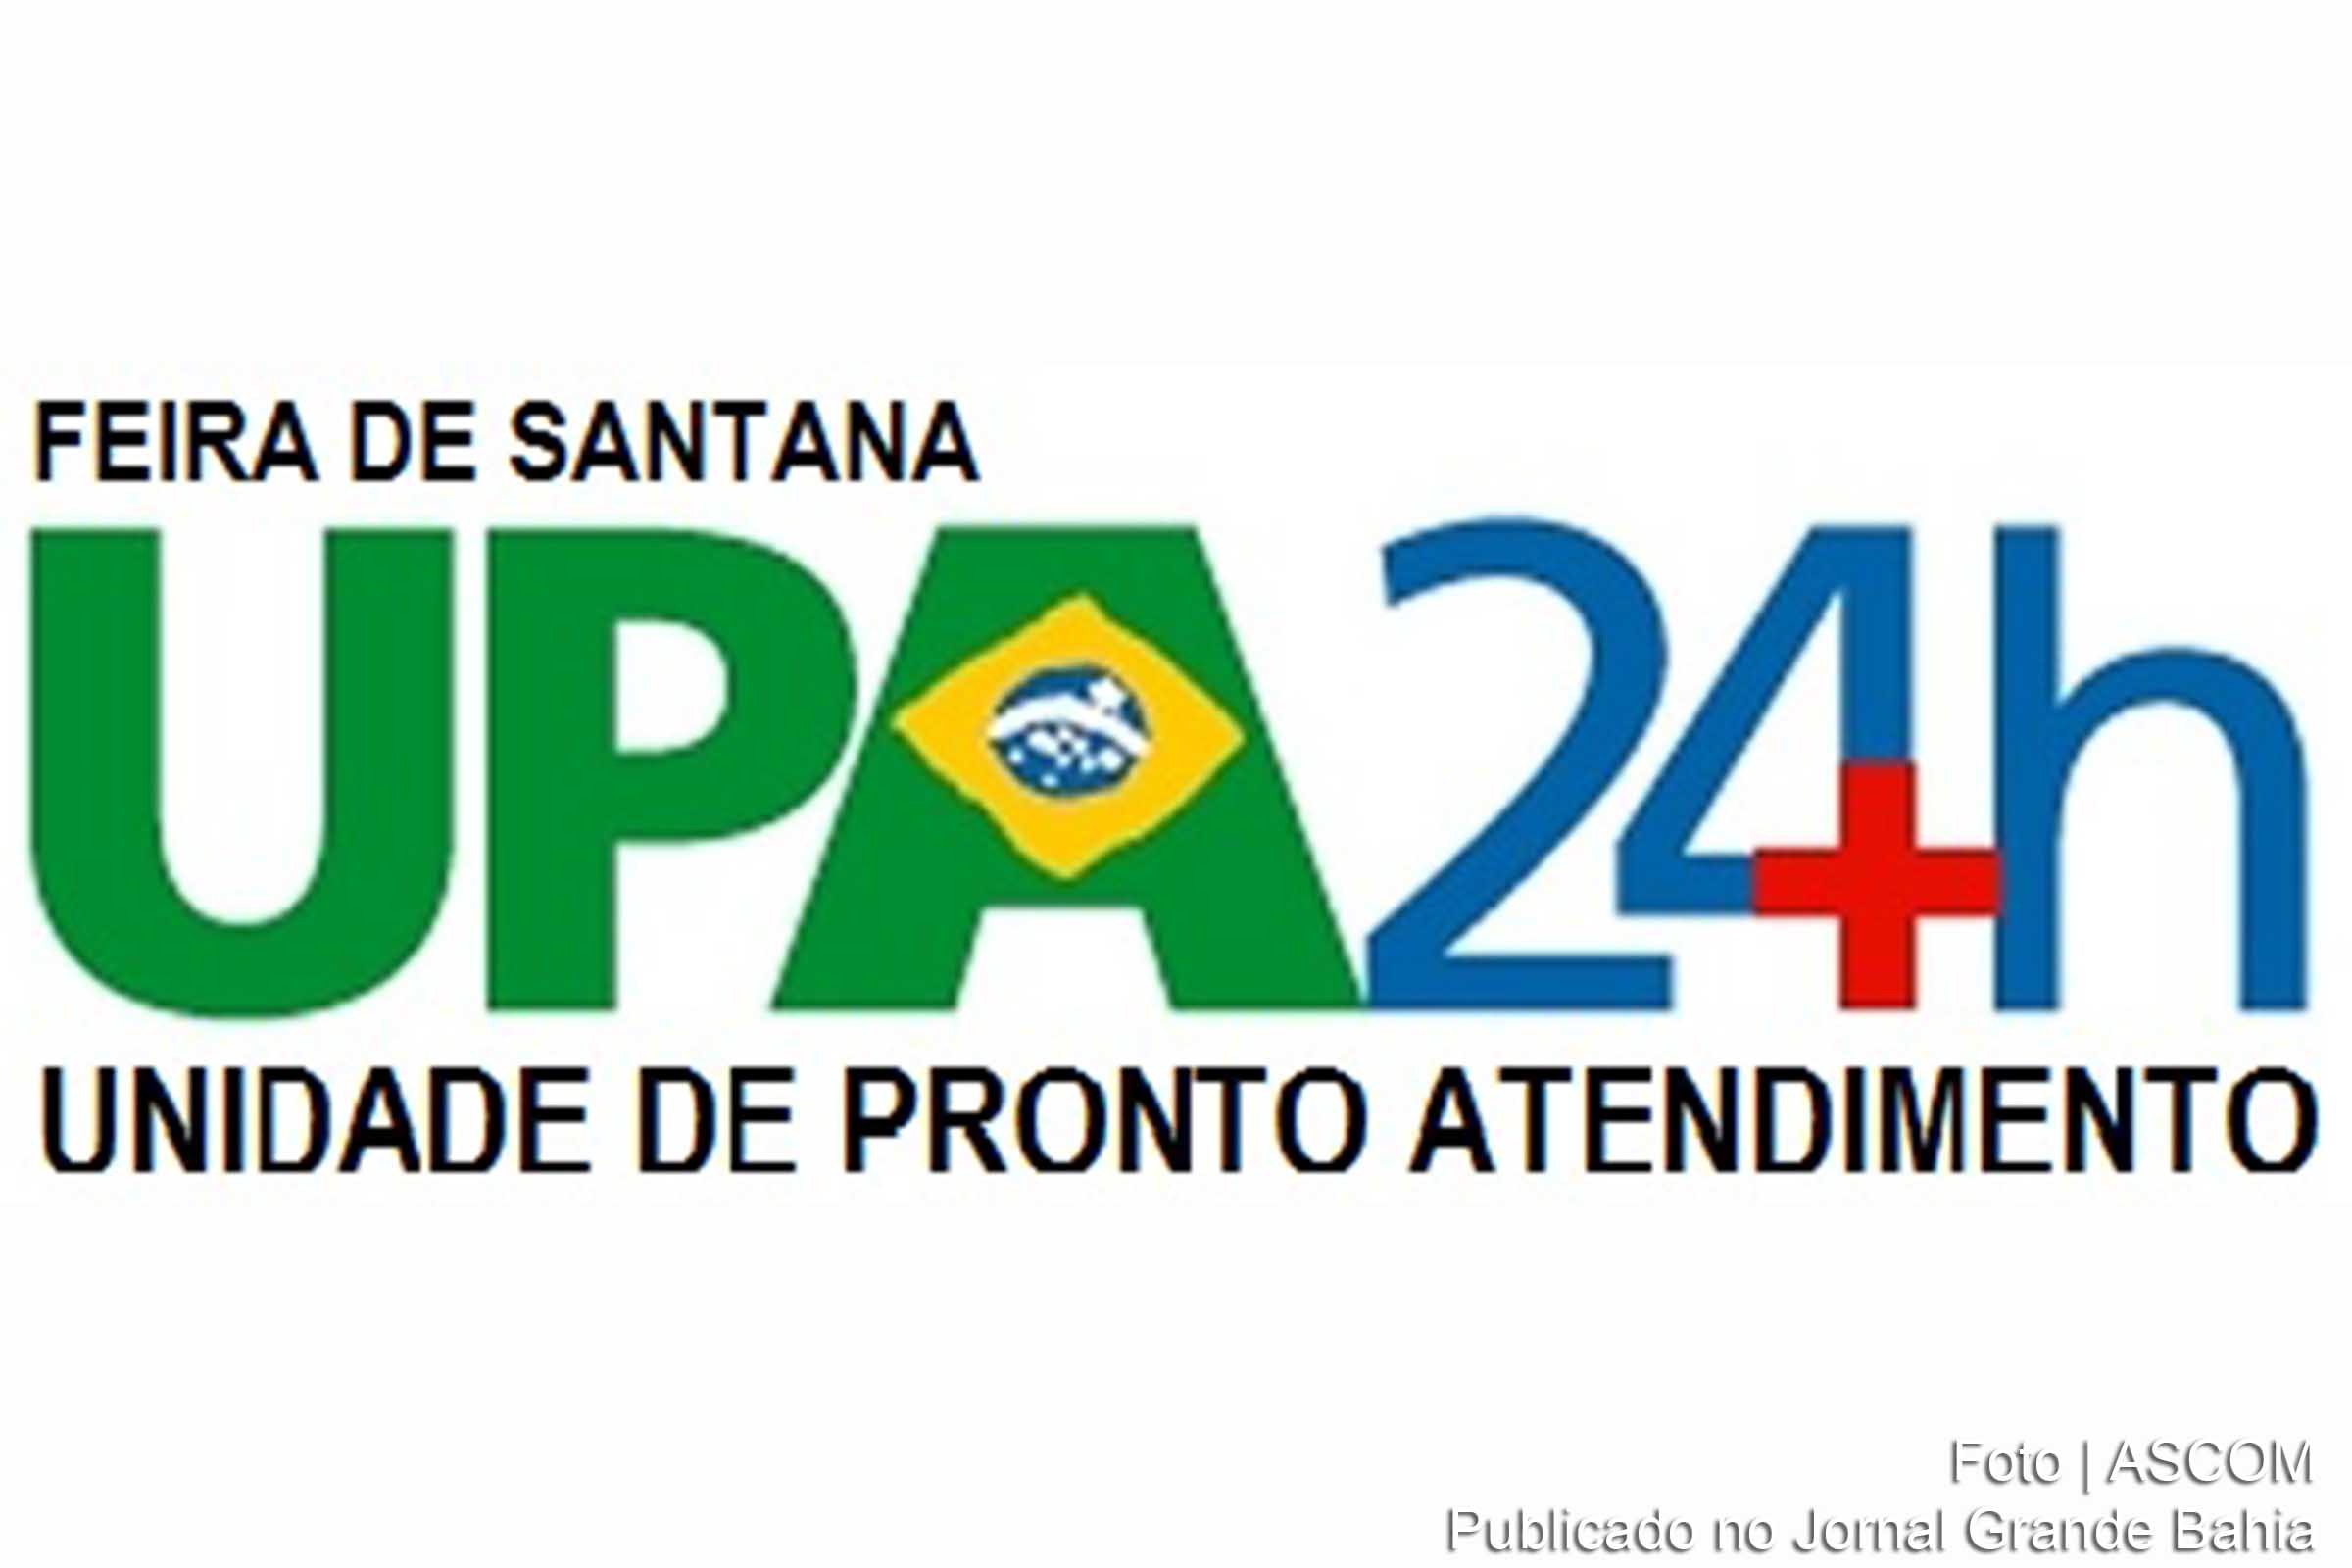 Processo seletivo para contratação de profissionais para UPA de Feira de Santana é aberto.